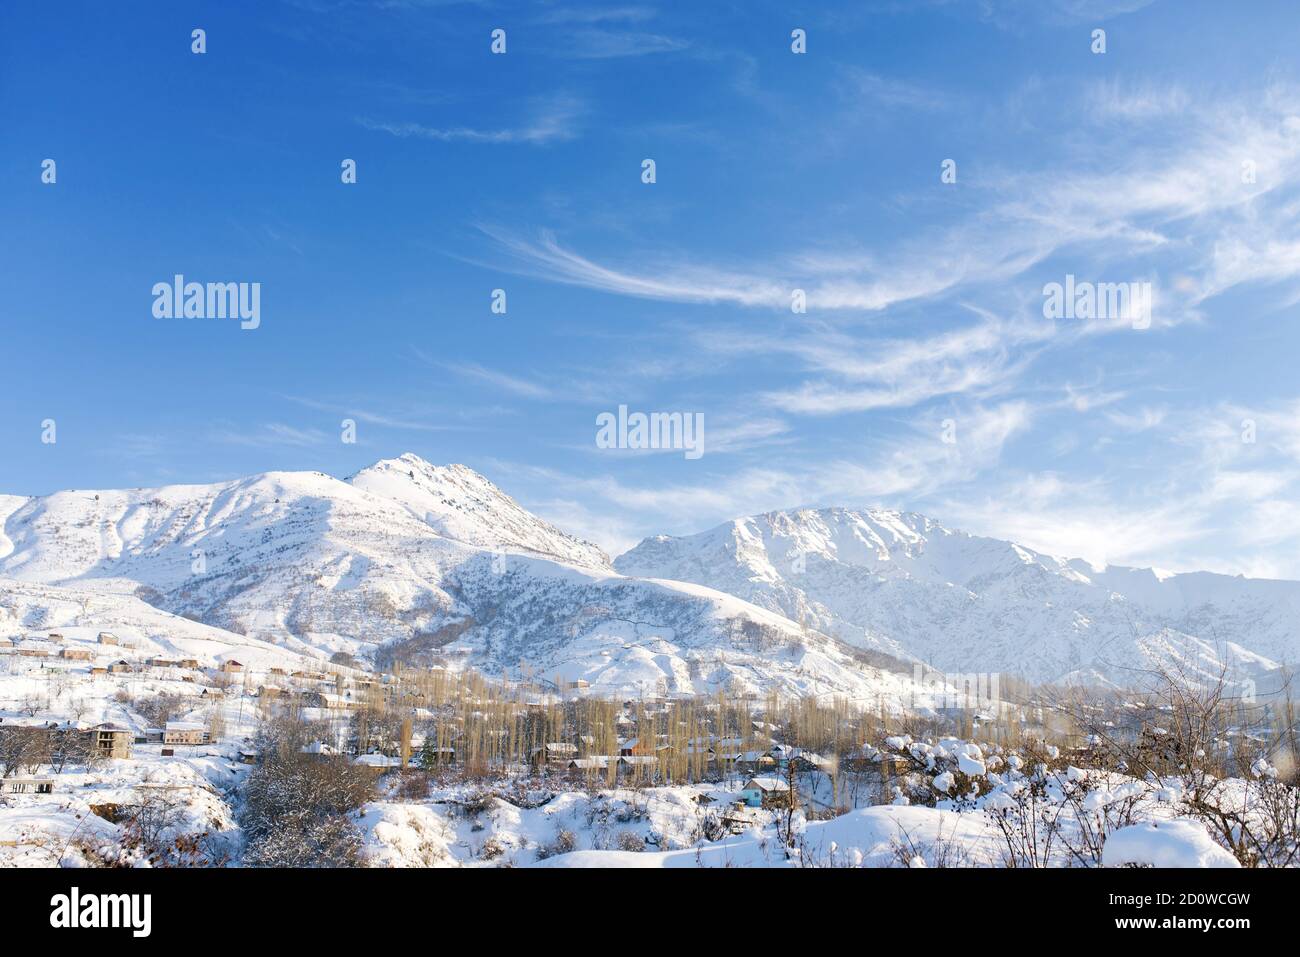 Erstaunliche Winterlandschaft der Berge in Usbekistan im Winter. tien shan. Blauer schöner Himmel und leichte Wolken darauf Stockfoto